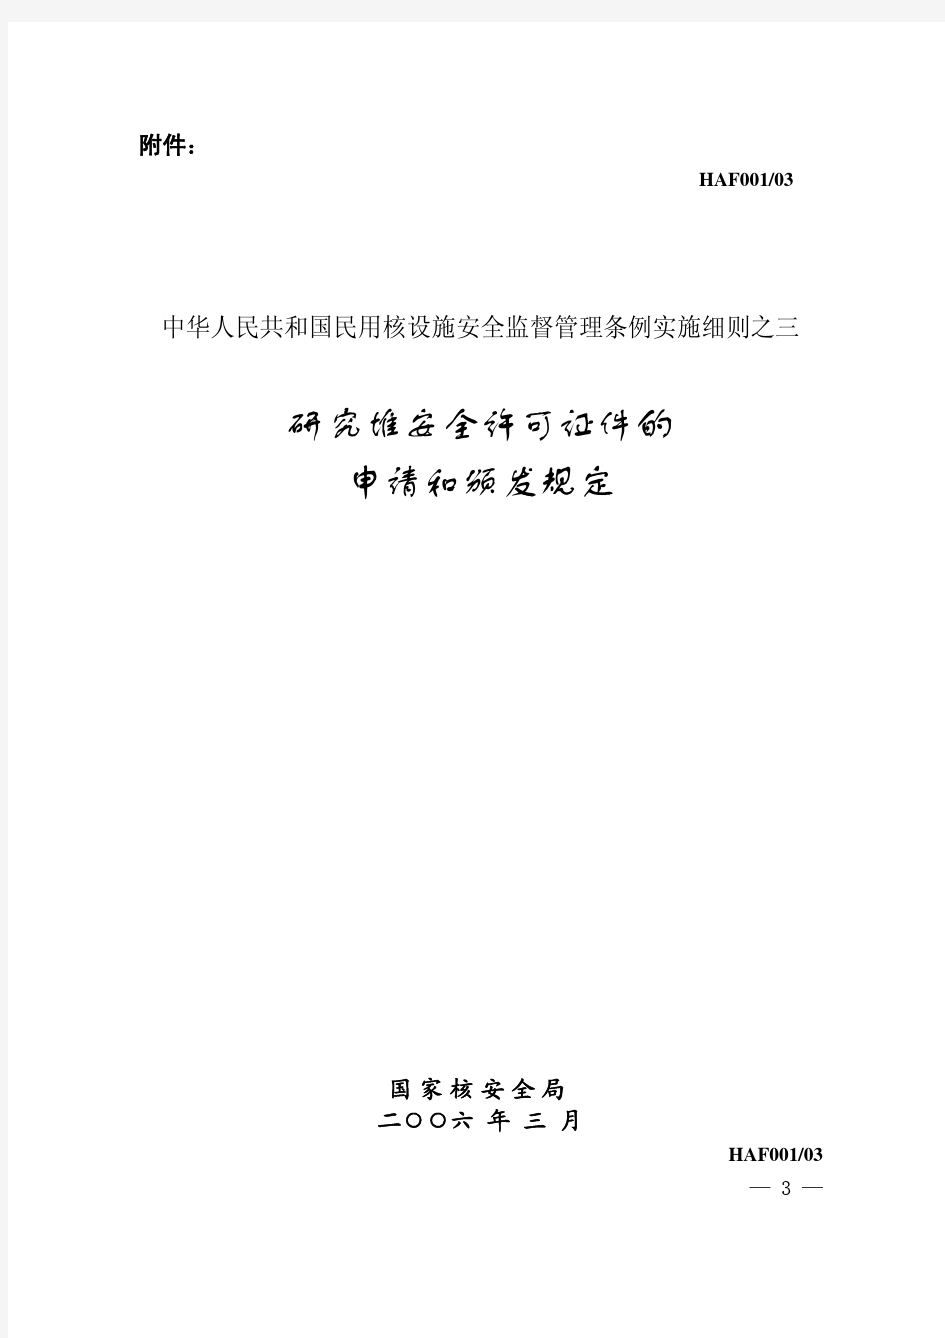 中华人民共和国民用核设施安全监督管理条例实施细则